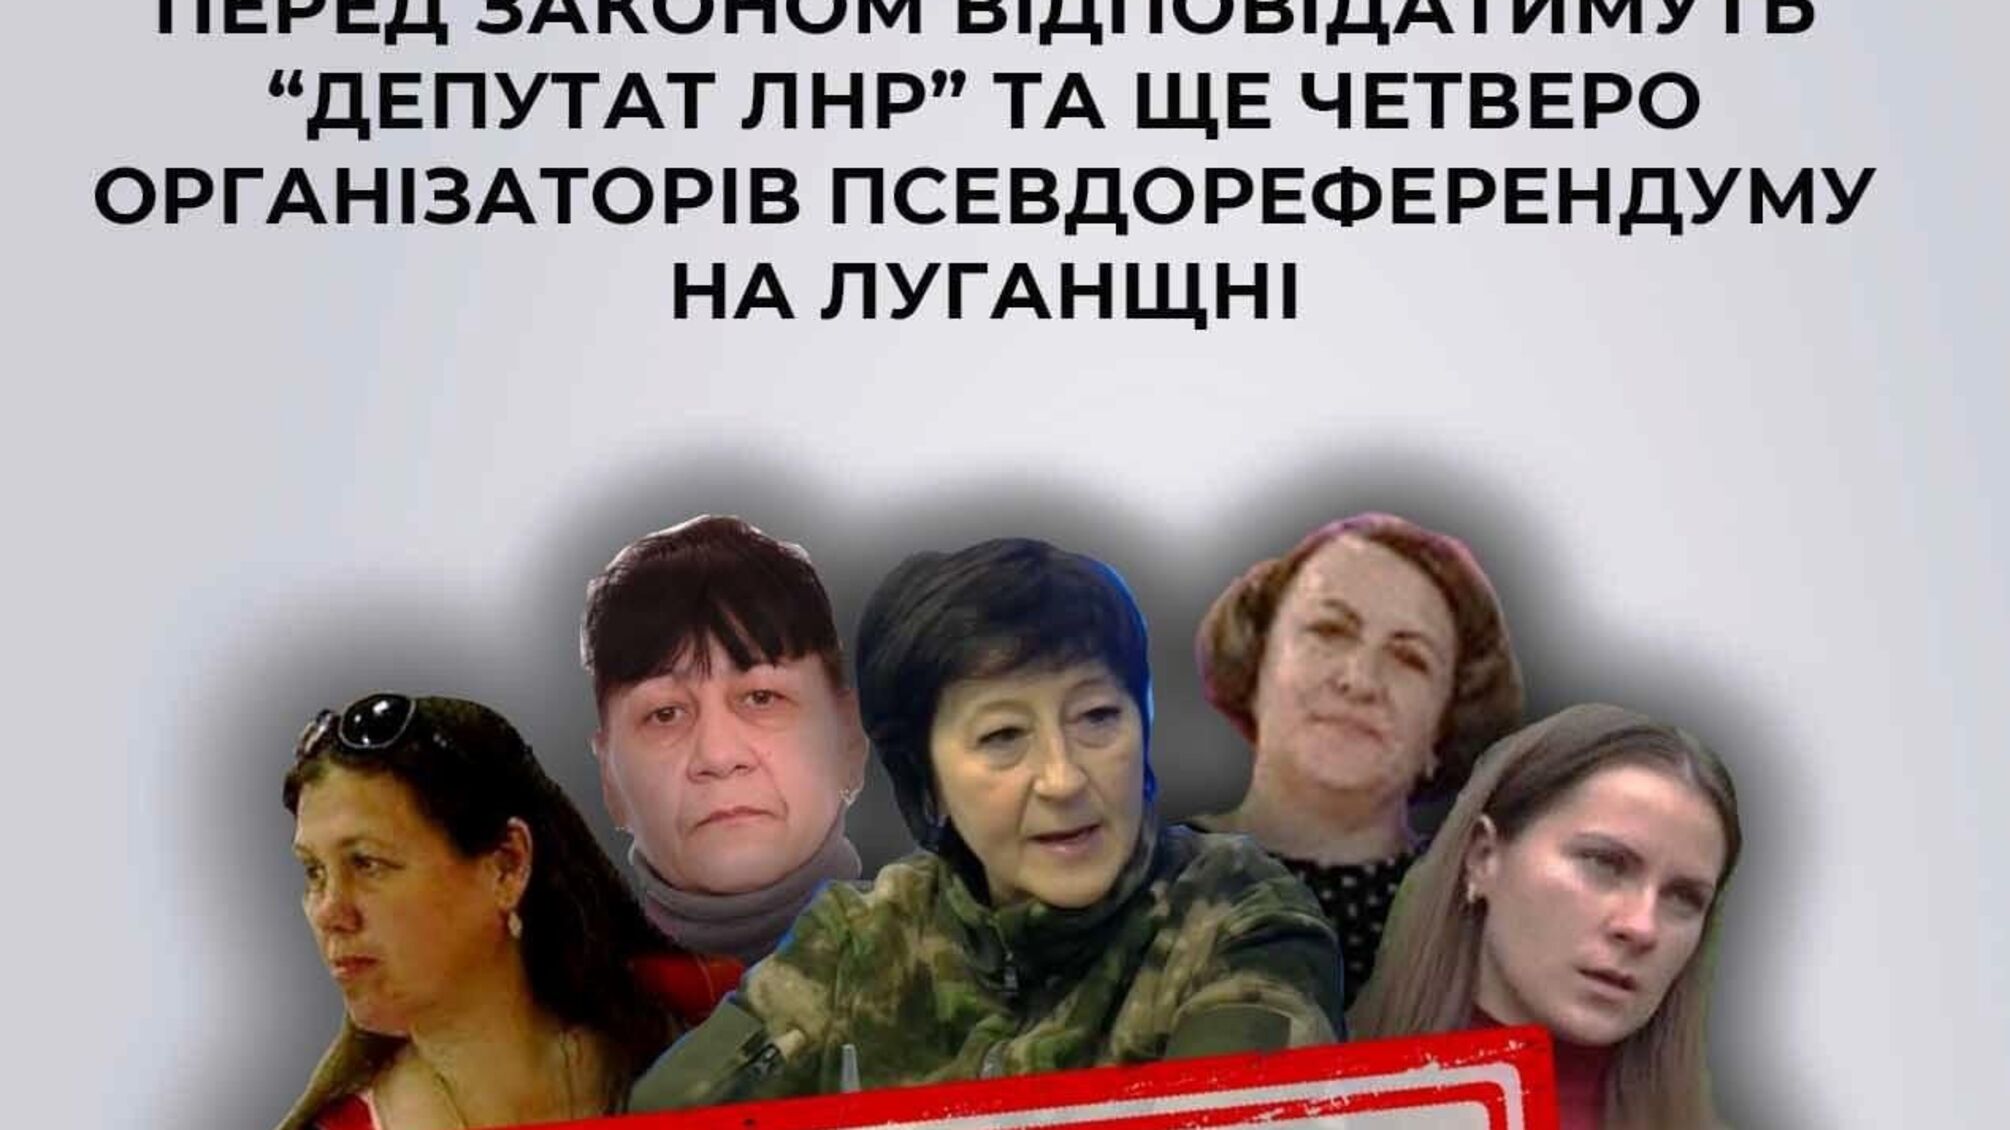 Осуждены пять коллаборантов: 'депутат лнр' и четверо организаторов псевдореферендума в Луганской области